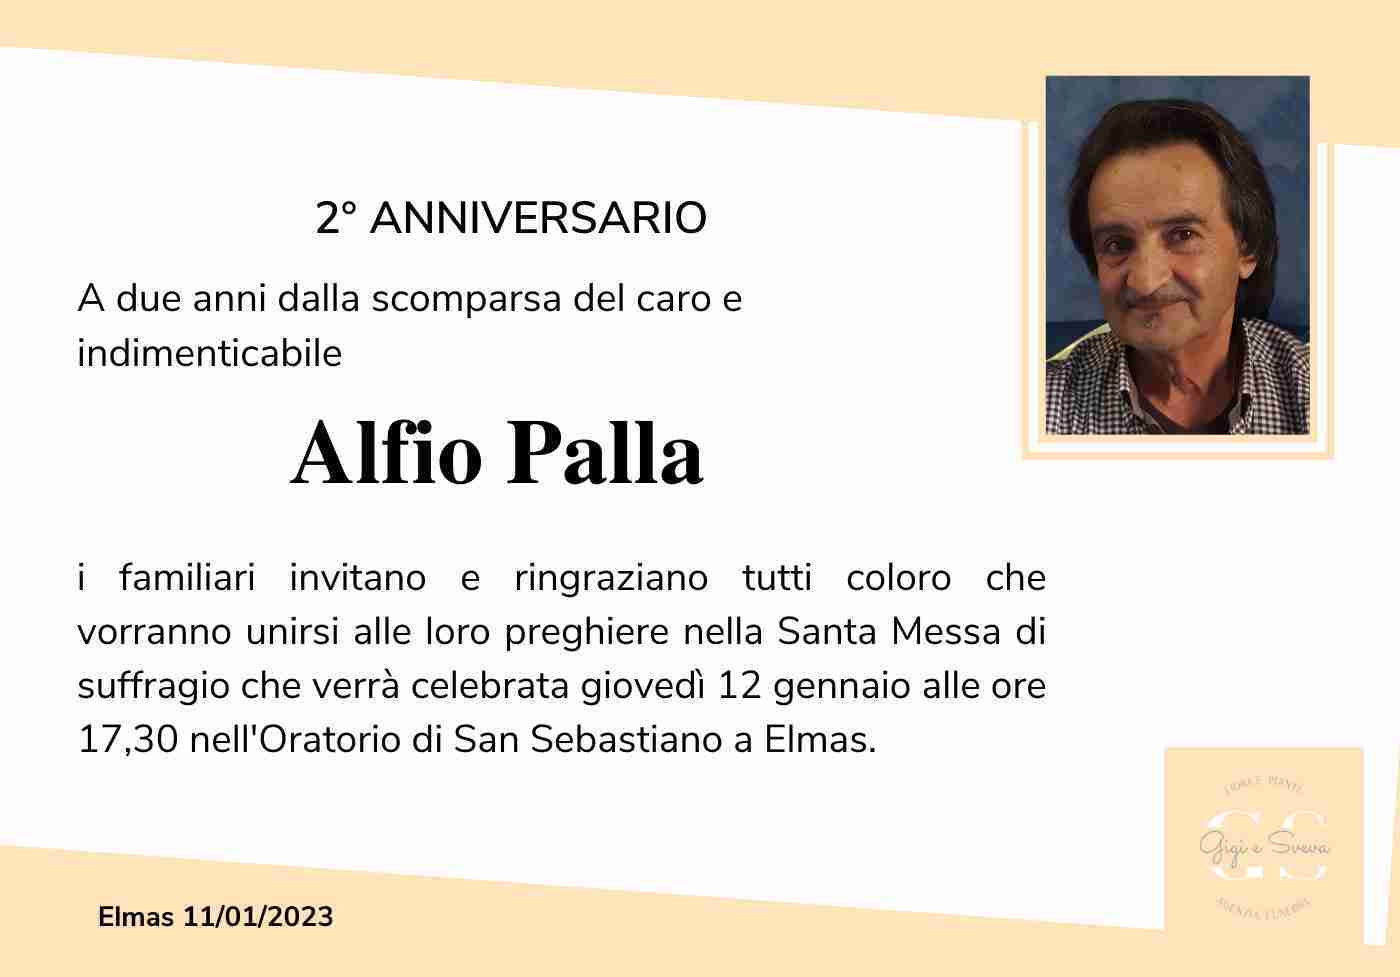 Alfio Palla